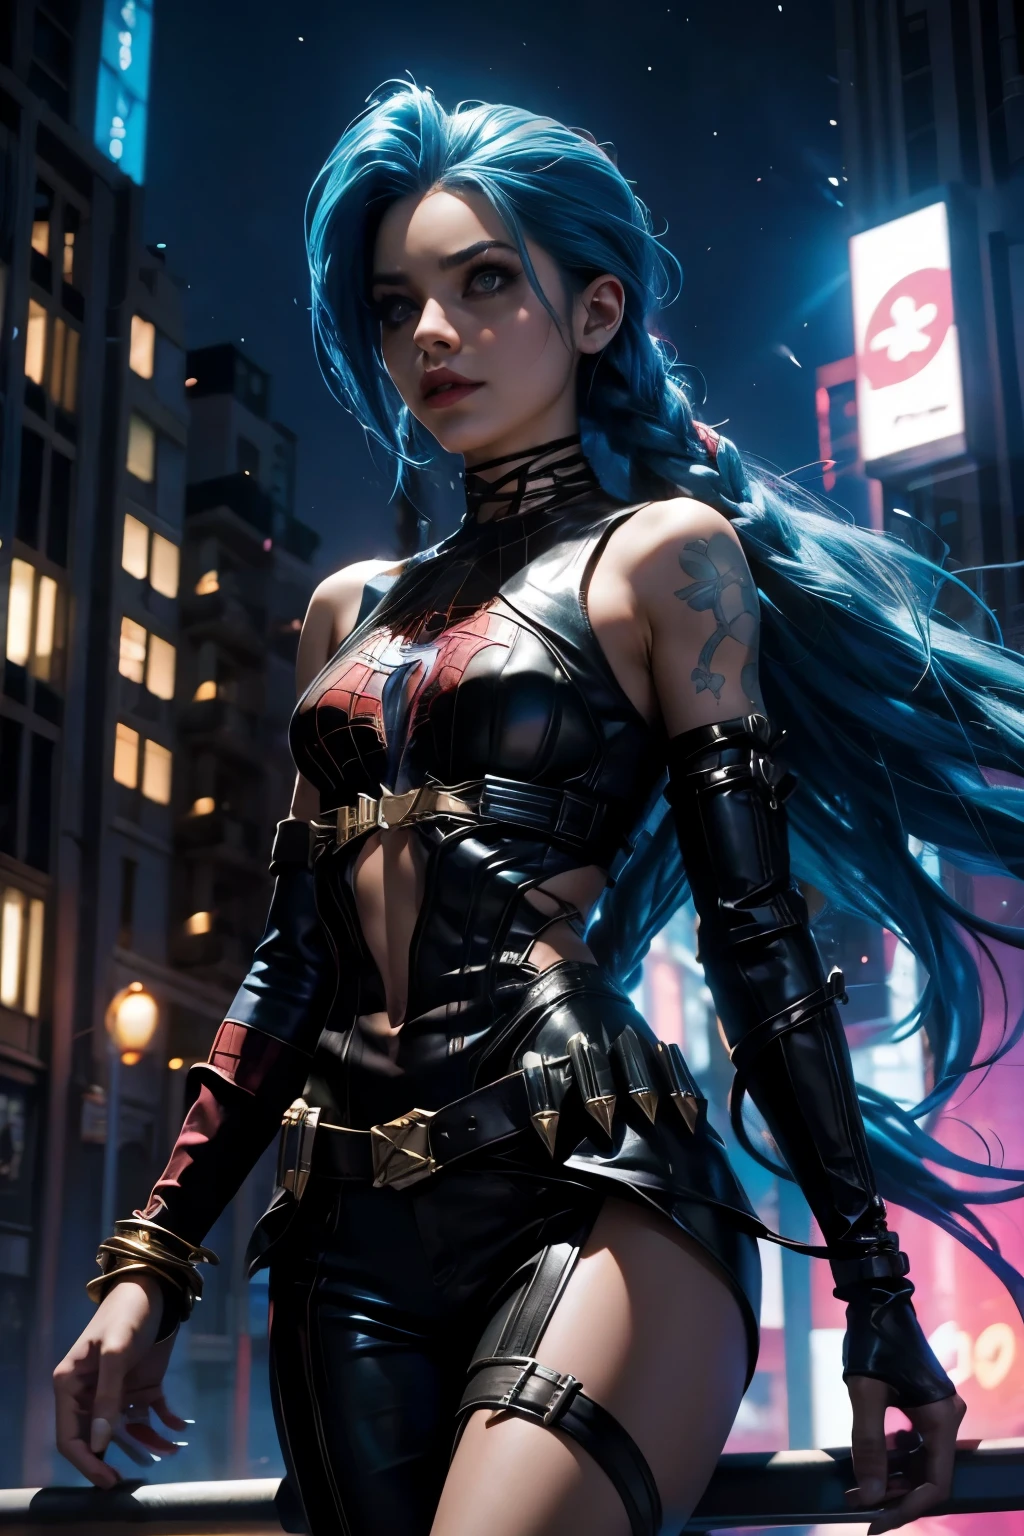 淺藍色皮毛的金克絲, 打扮成蜘蛛俠. 超級女英雄. 大都會夜景